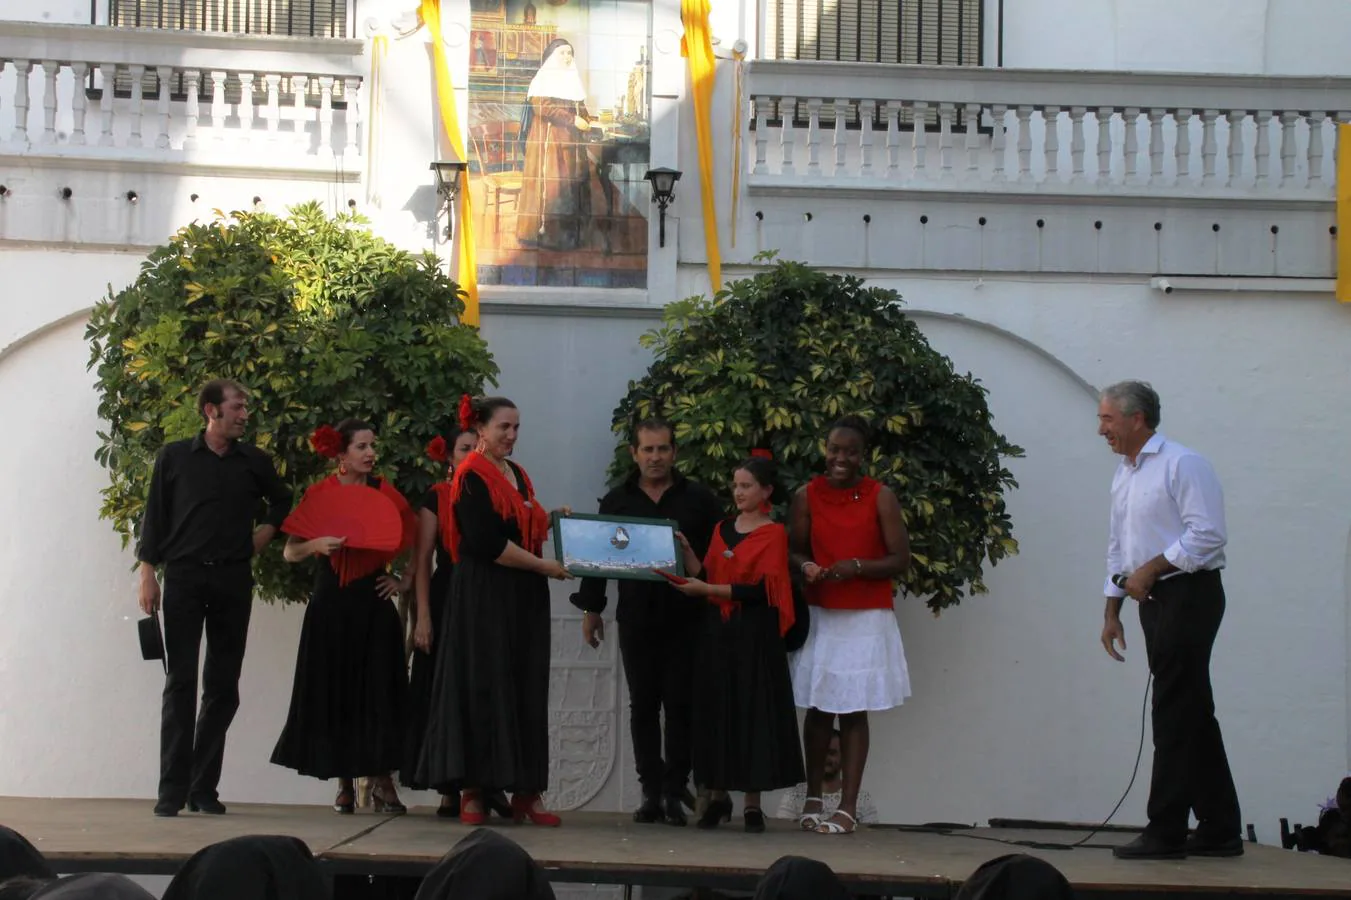 Convivencia de las antiguas alumnas del Colegio 'Madre de Dios' de las Hermanas de la Cruz